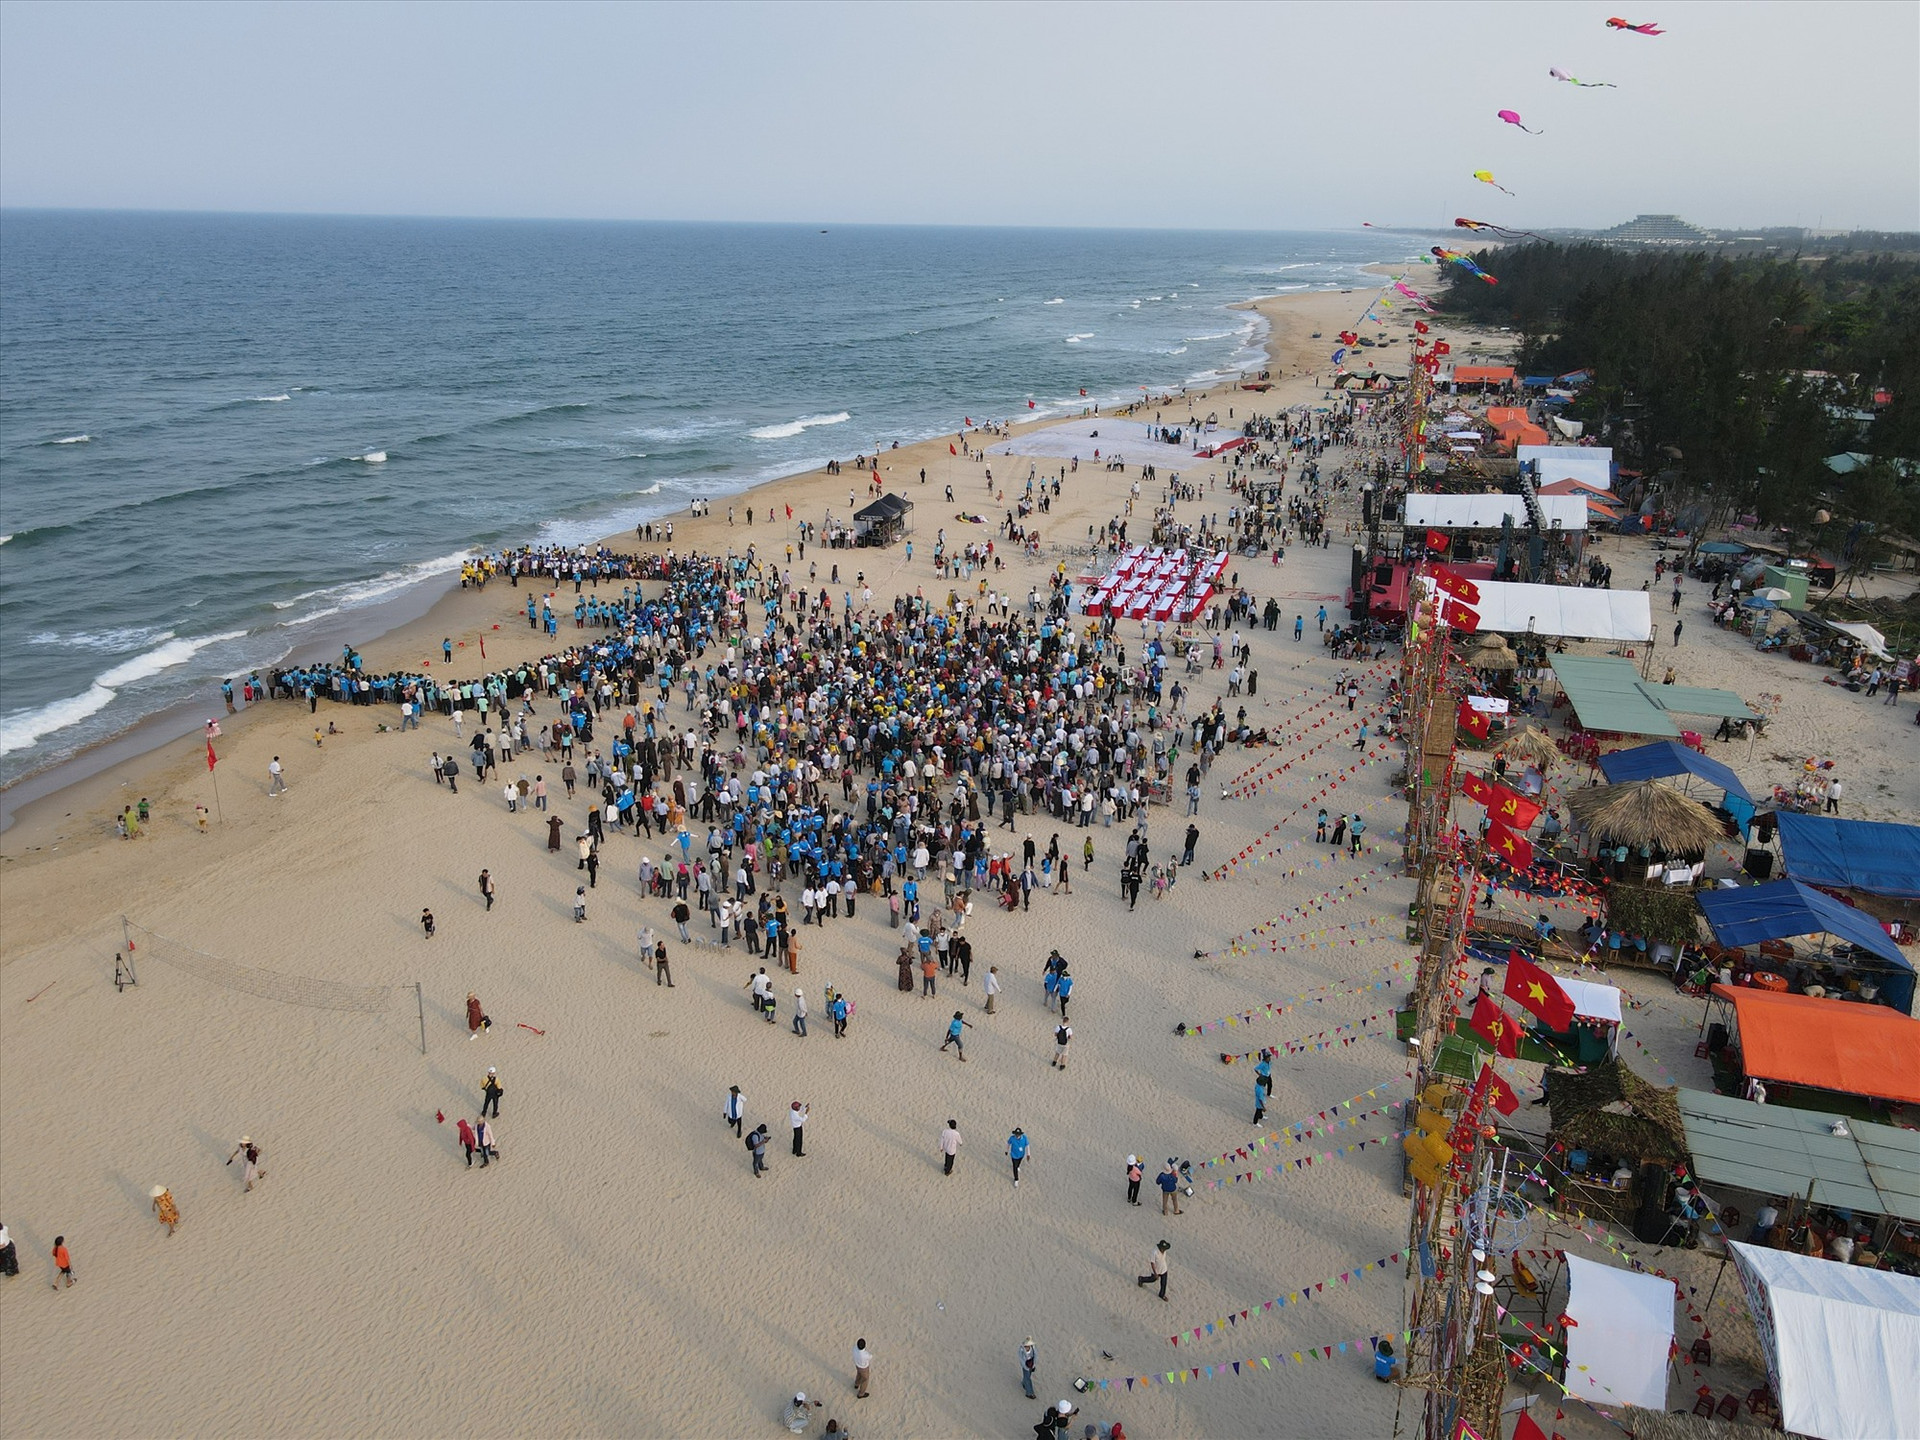 Lễ hội văn hóa - thể thao miền biển Thăng Bình năm 2023 tổ chức tại bãi biển Cửa Khe, thôn Duy Hà, xã Bình Dương với nhiều hoạt động sôi nổi, hấp dẫn. Ảnh: H.Q